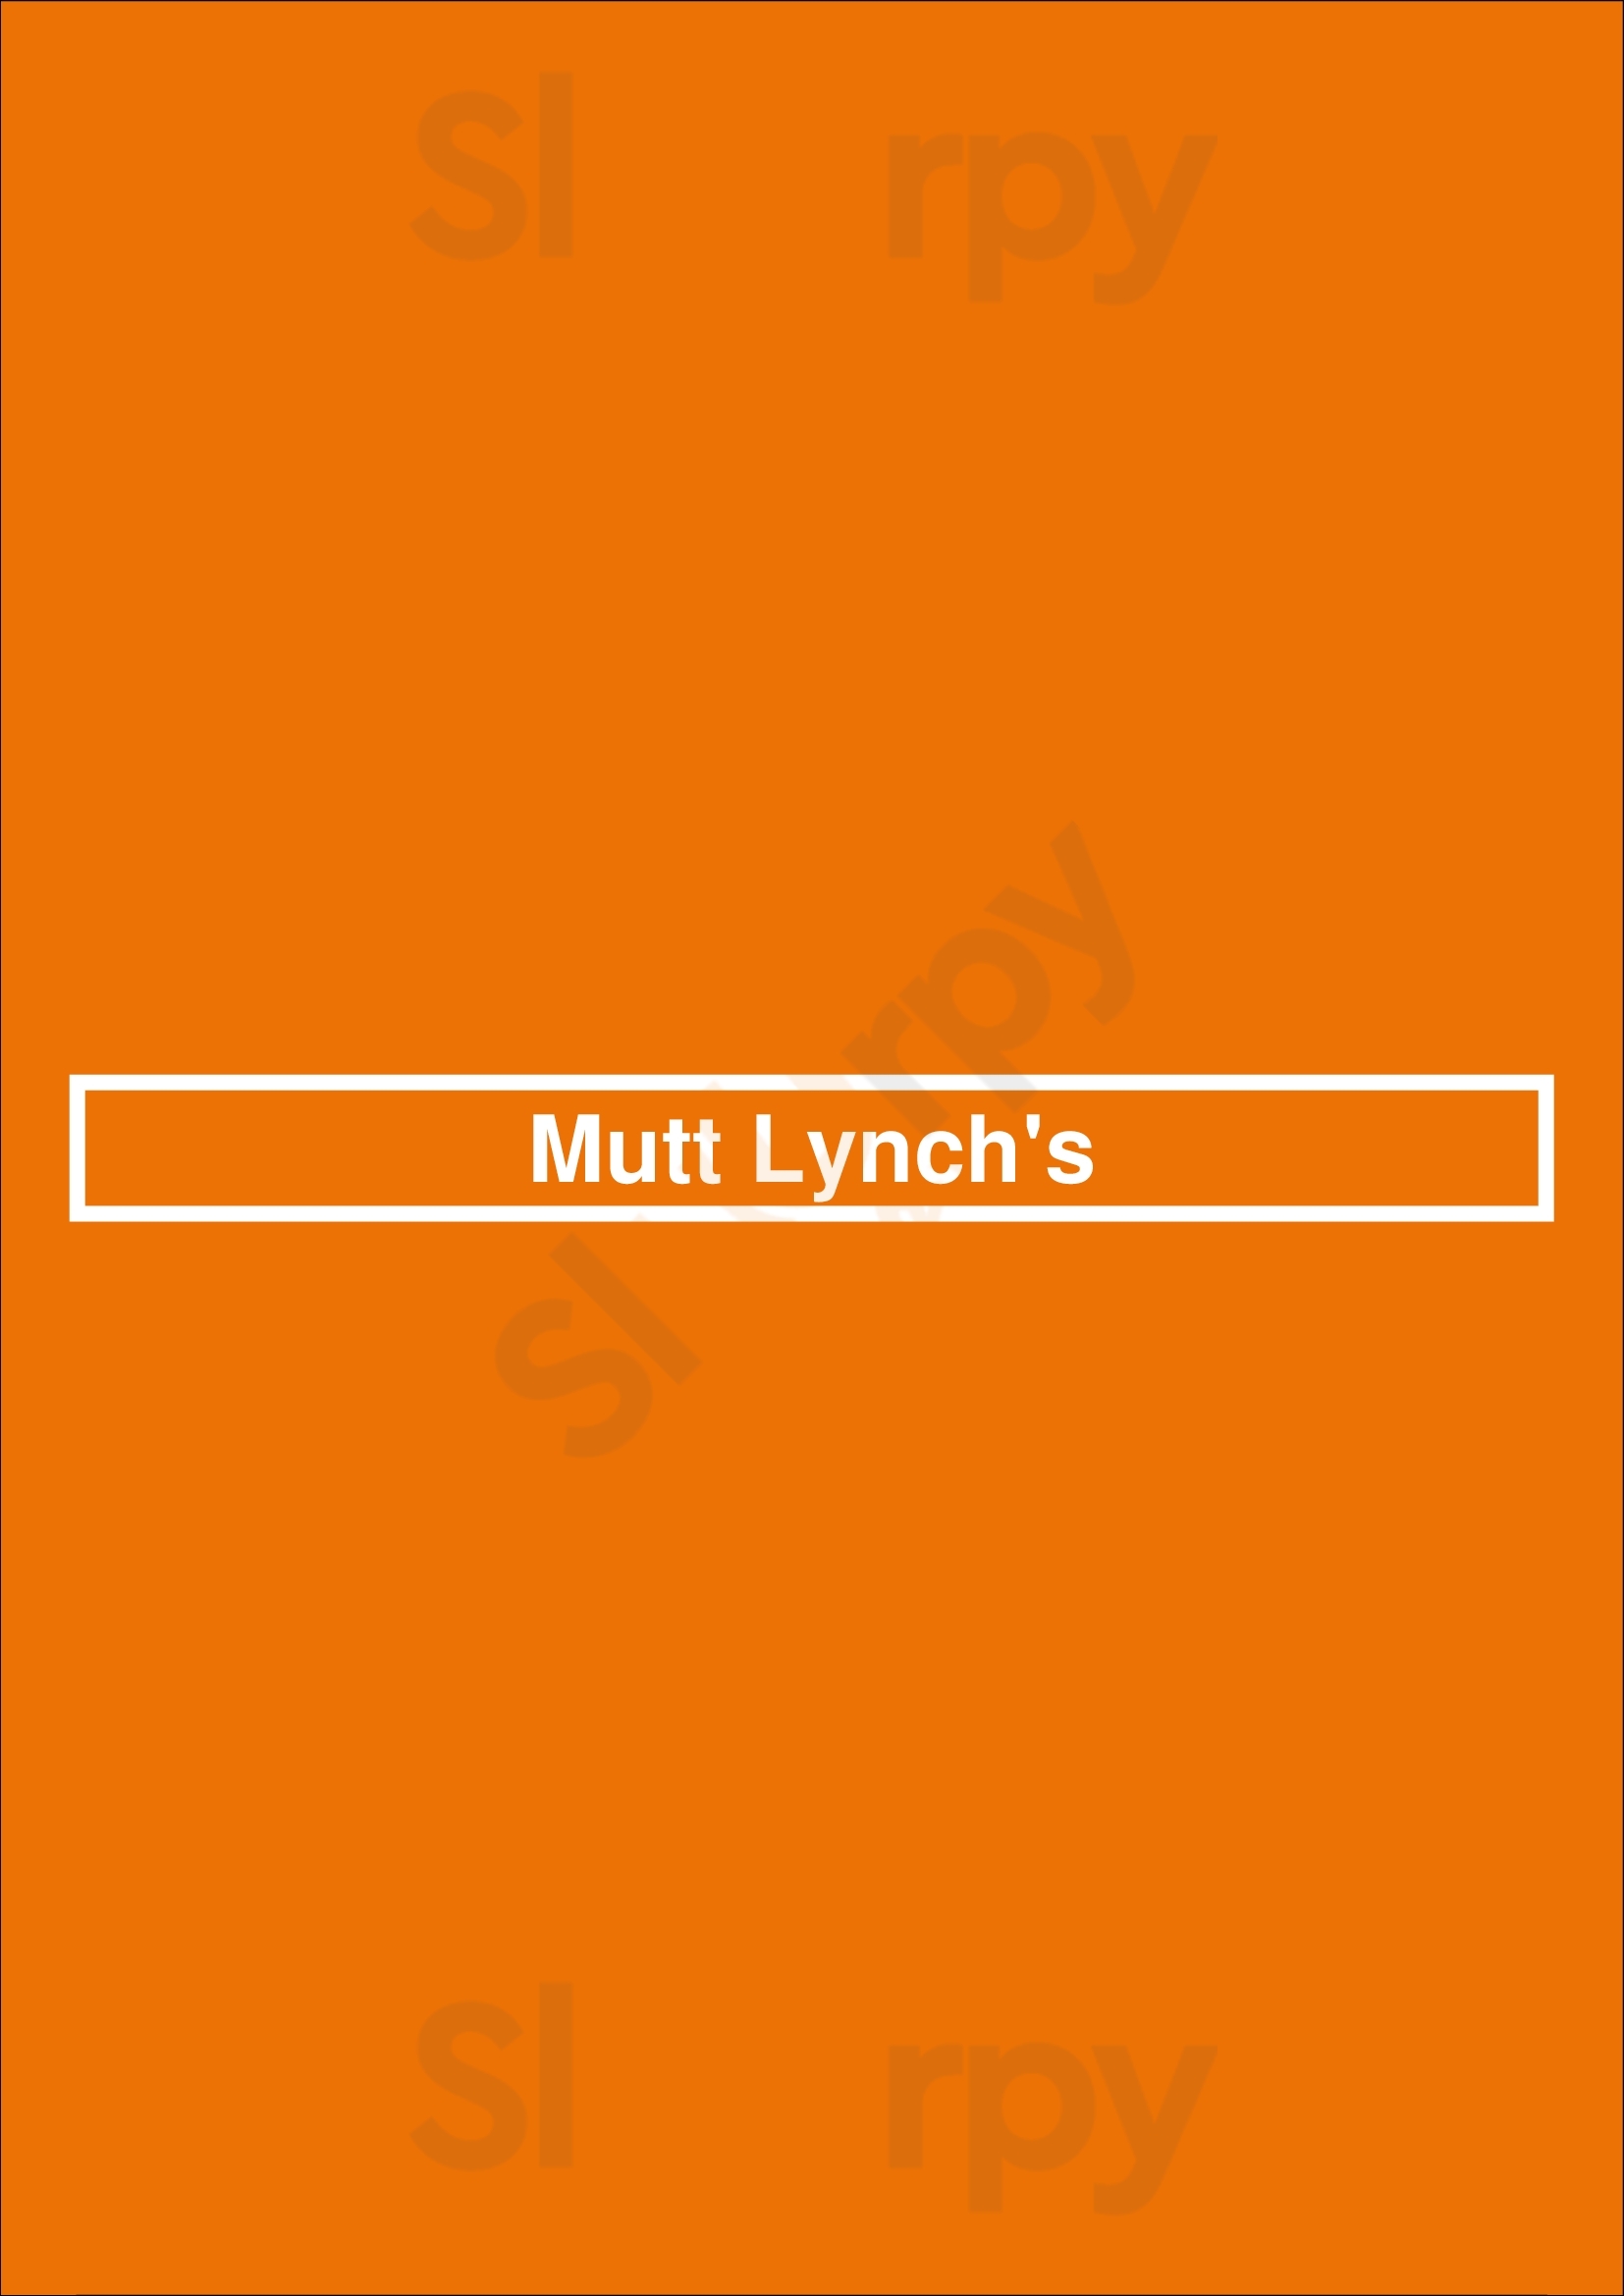 Mutt Lynch's Newport Beach Menu - 1